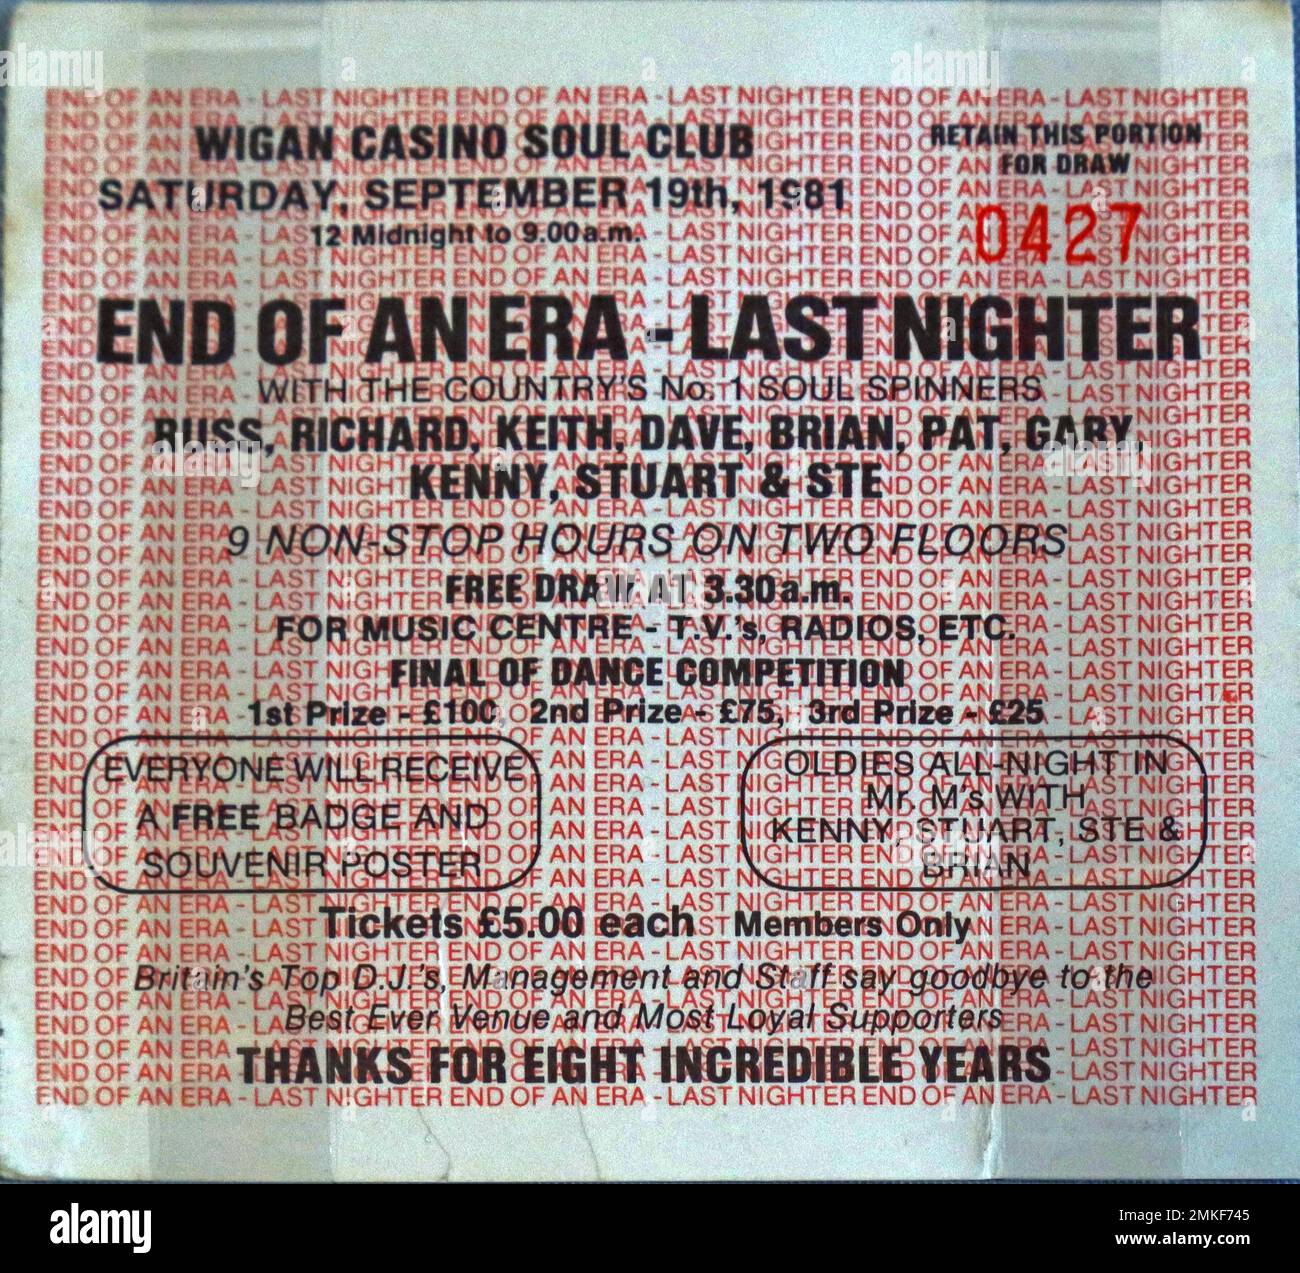 Billet pour le Wigan Casino Soul Club, en compagnie de Russ, Richard, Keith, Dave et Brian, Tirage gratuit à 3:30am - fin d'une époque - dernier chasseur Banque D'Images